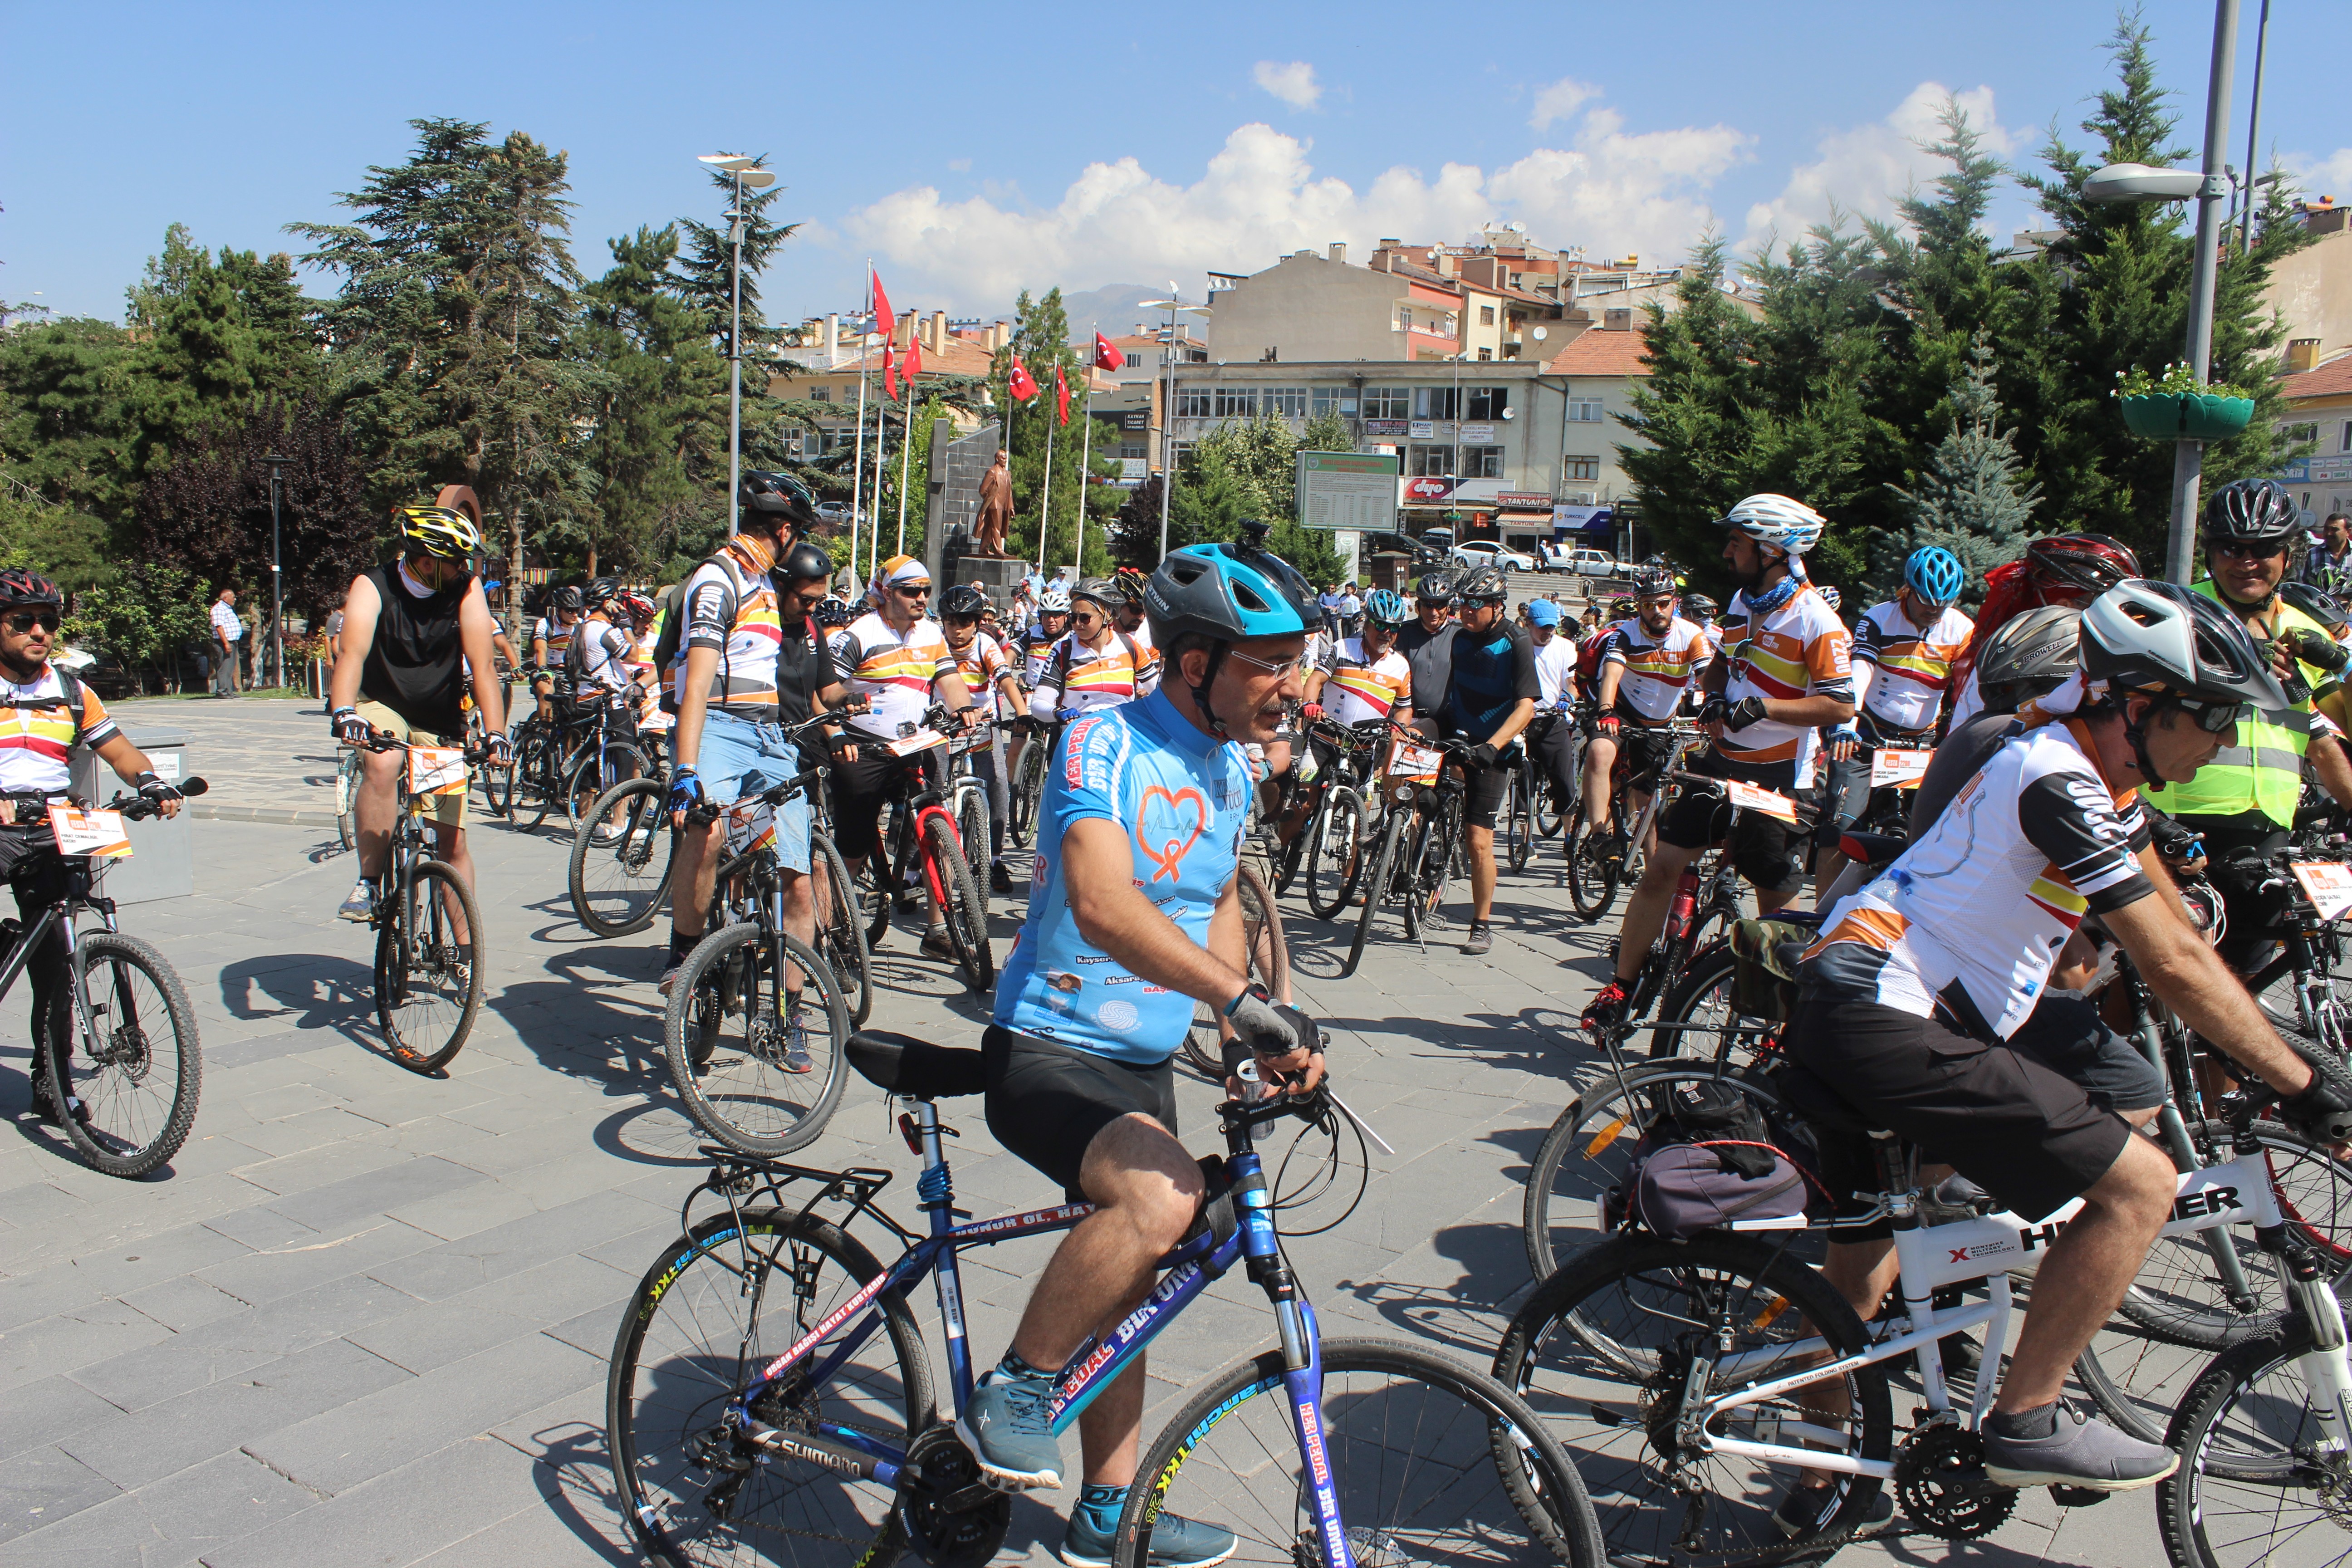 Festa 2200 Festivali’nin bisikletçileri Sultan Sazlığı’nda pedal çevirdi